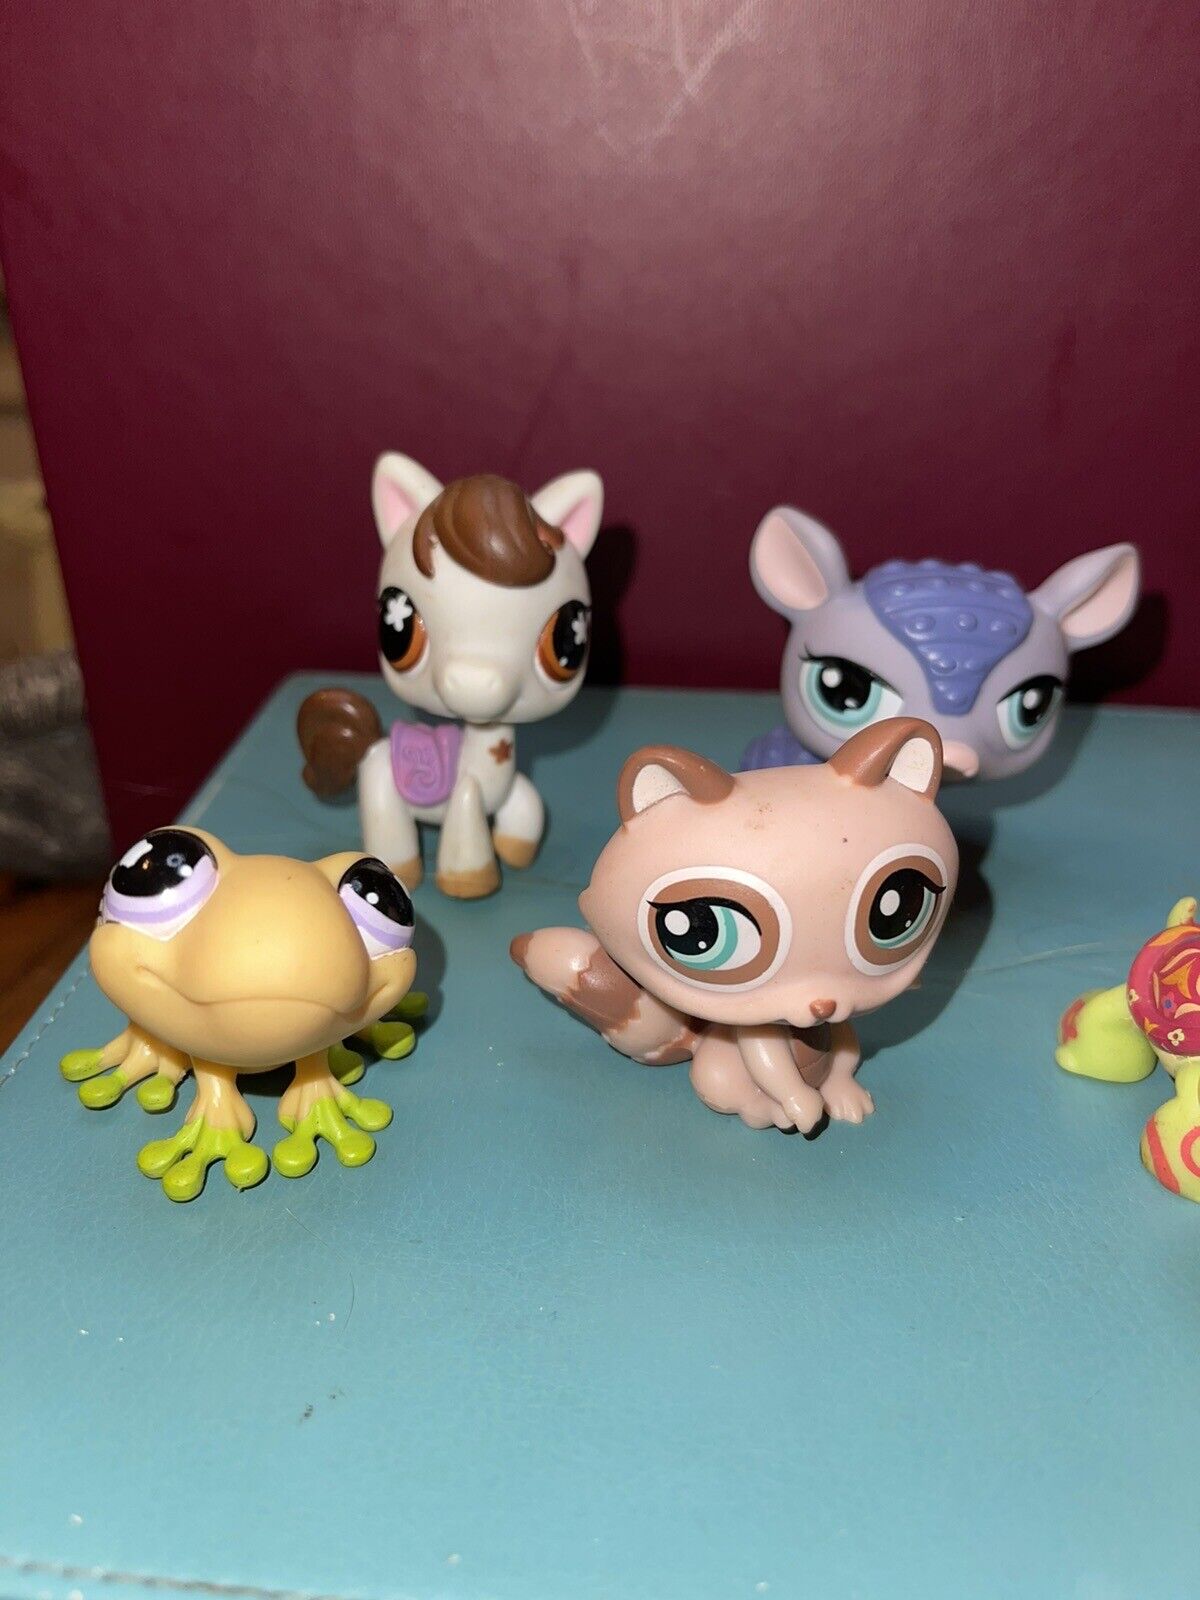 LPS Hasbro Littlest pet shop 5 figures figurines Lot #1 W/ Lizard